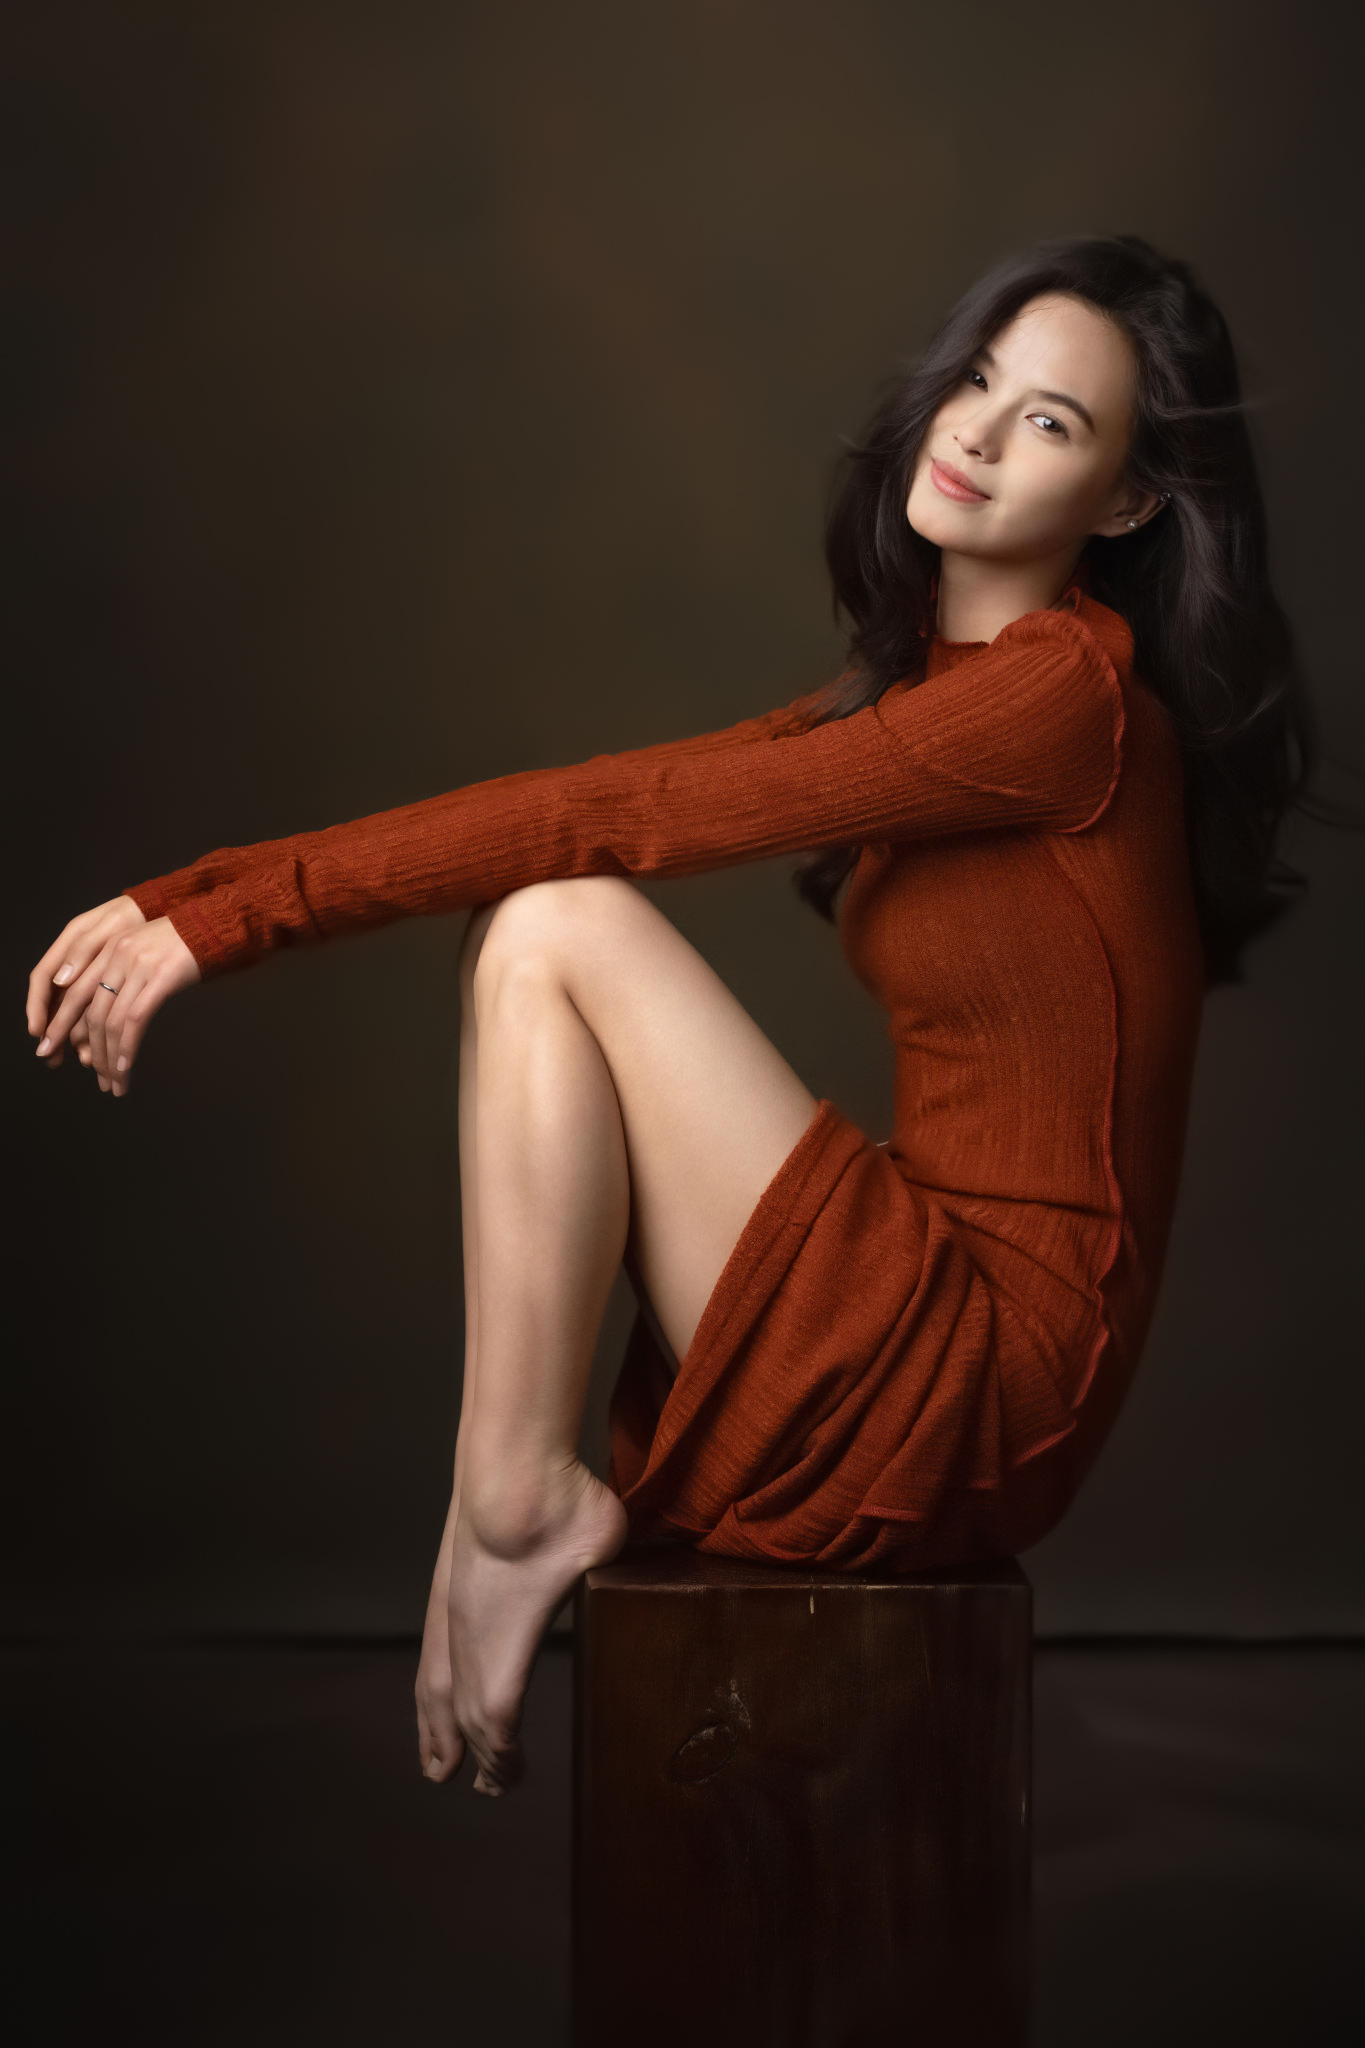 Lee Hu Women Barefoot Dress Asian Smiling 1365x2048